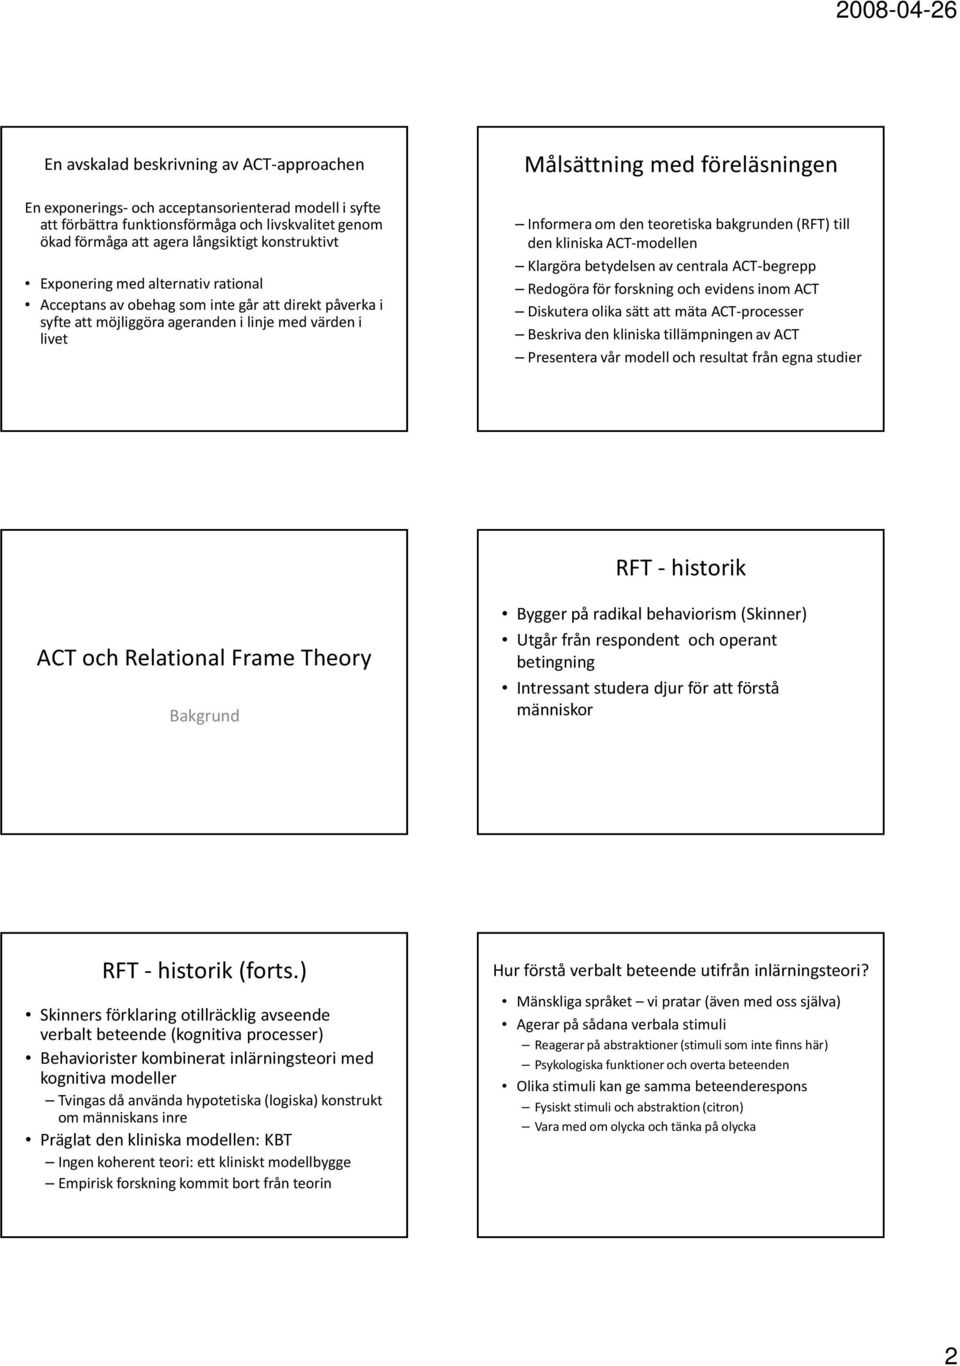 teoretiska bakgrunden (RFT) till den kliniska ACT-modellen Klargöra betydelsen av centrala ACT-begrepp Redogöra för forskning och evidens inom ACT Diskutera olika sätt att mäta ACT-processer Beskriva